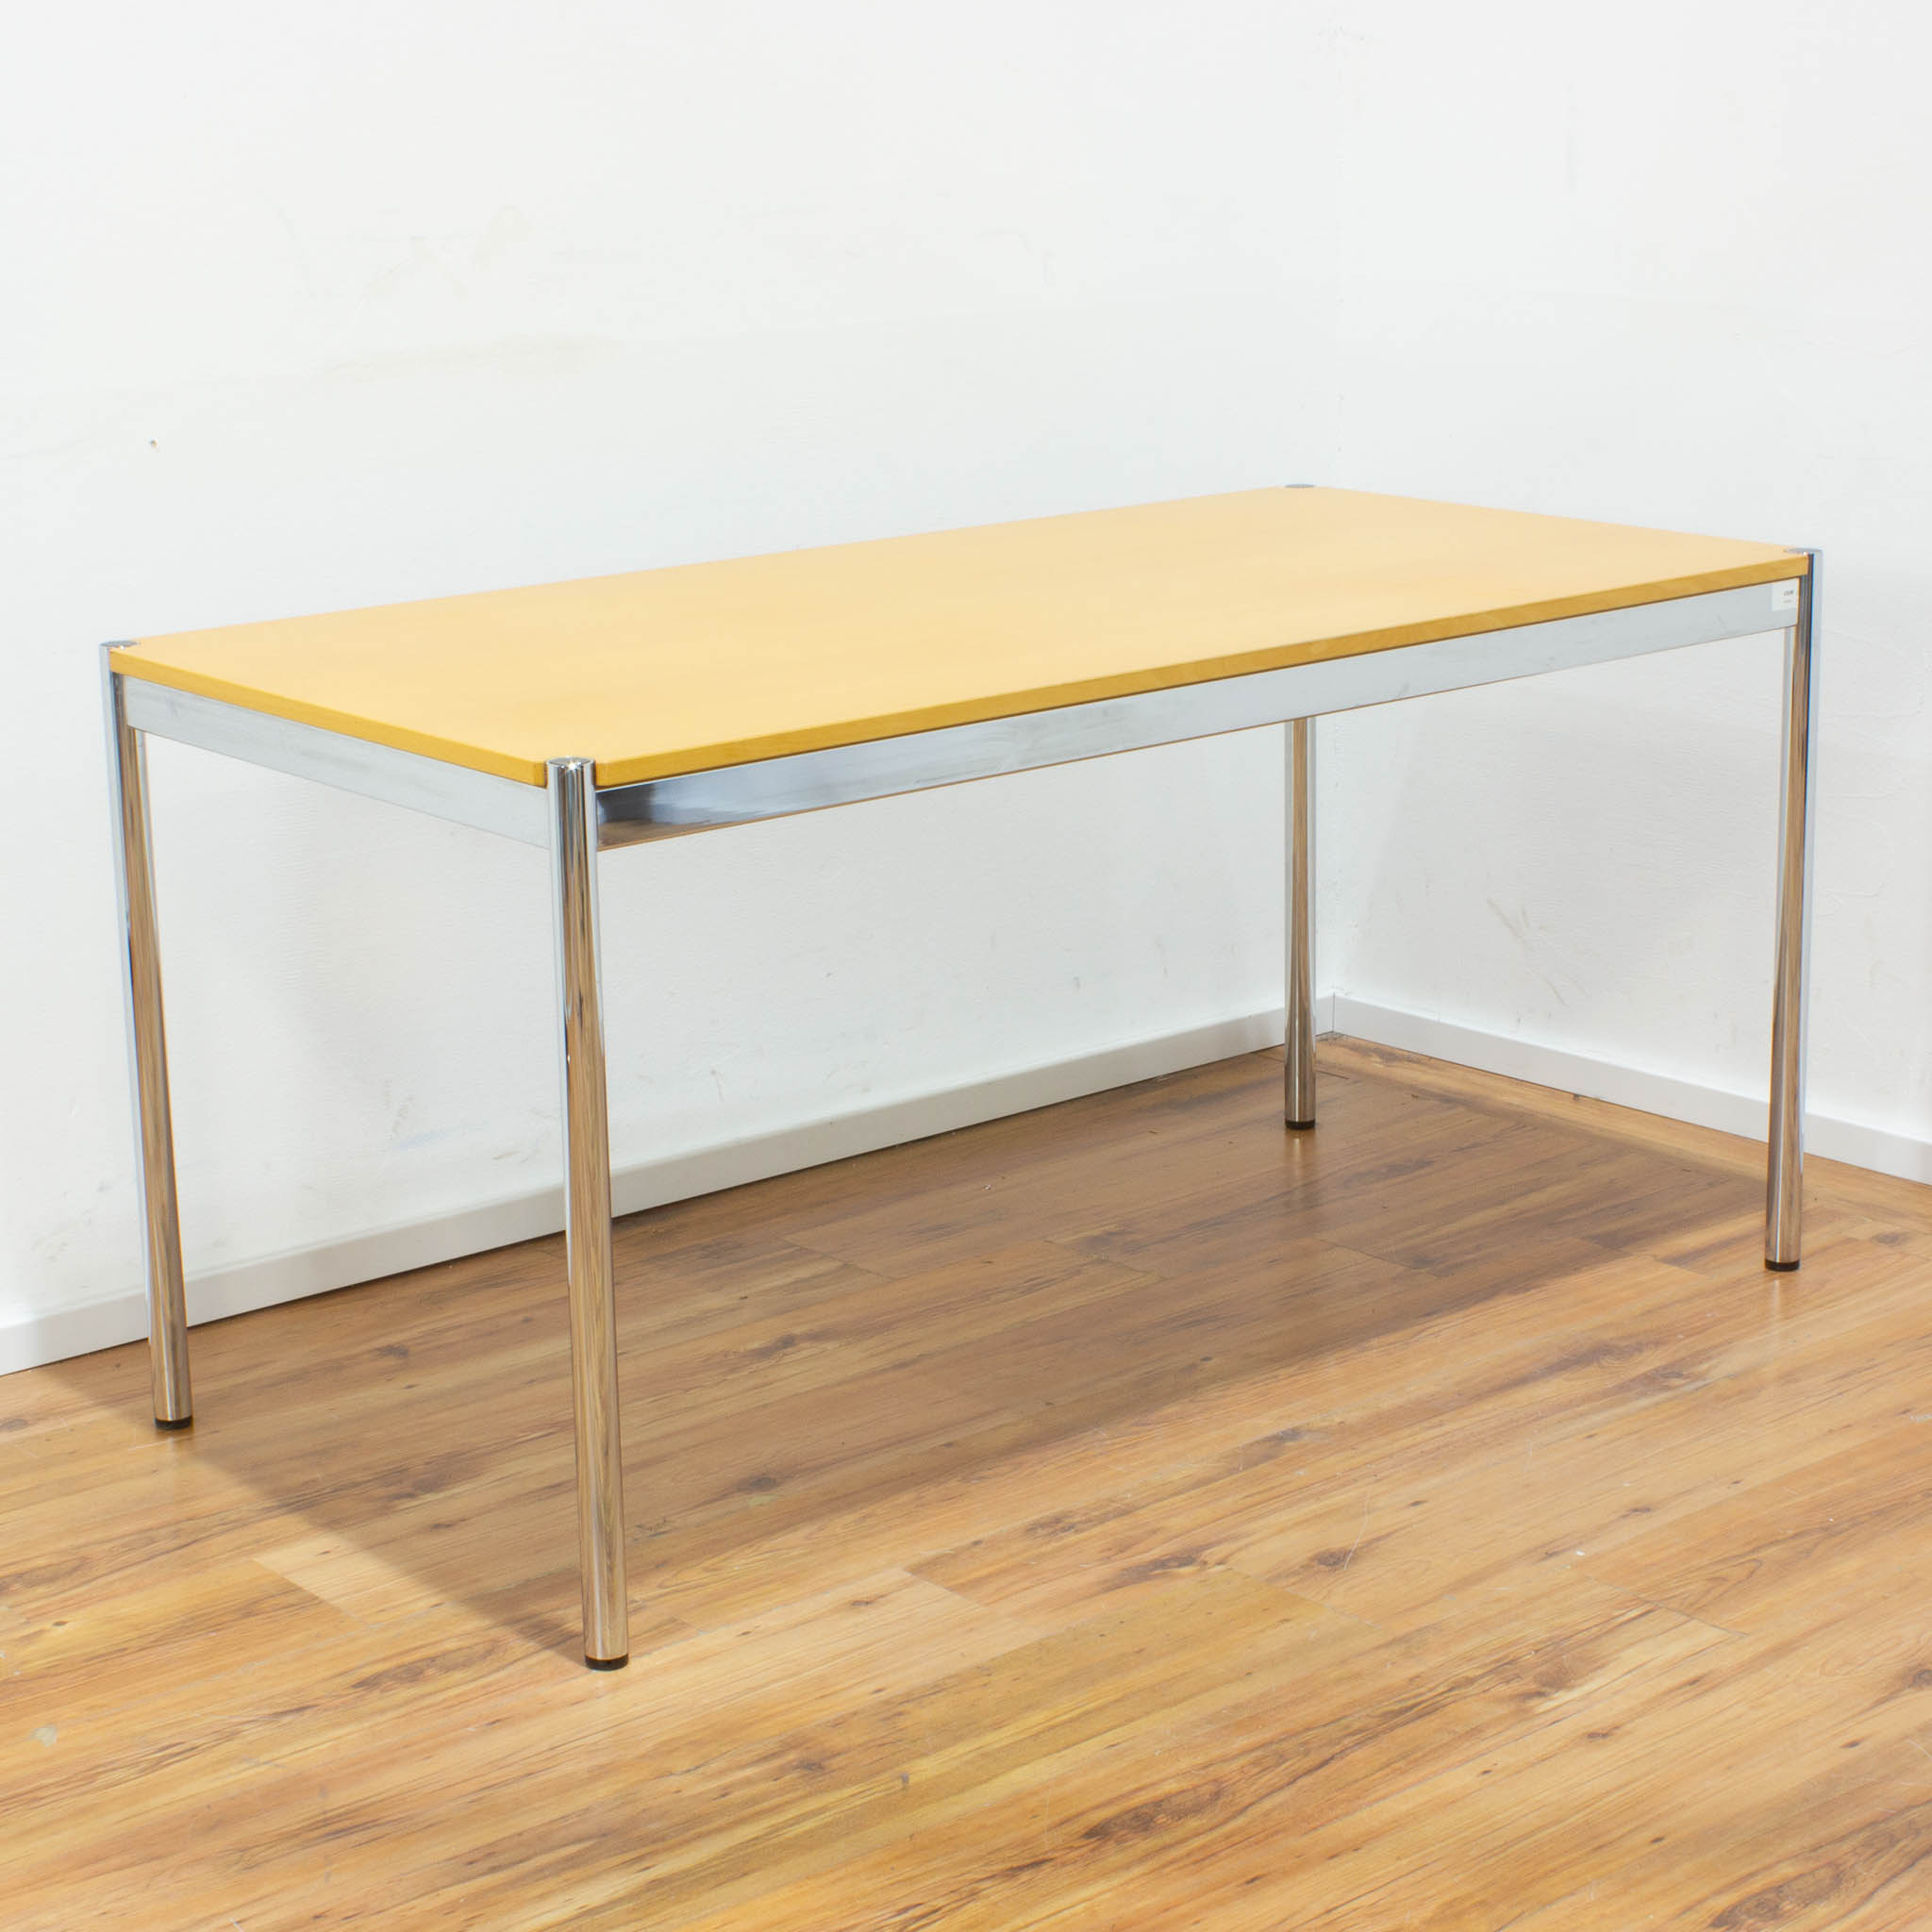 USM Haller Schreibtisch - Tischplatte buche gebraucht - 150 x 75 cm